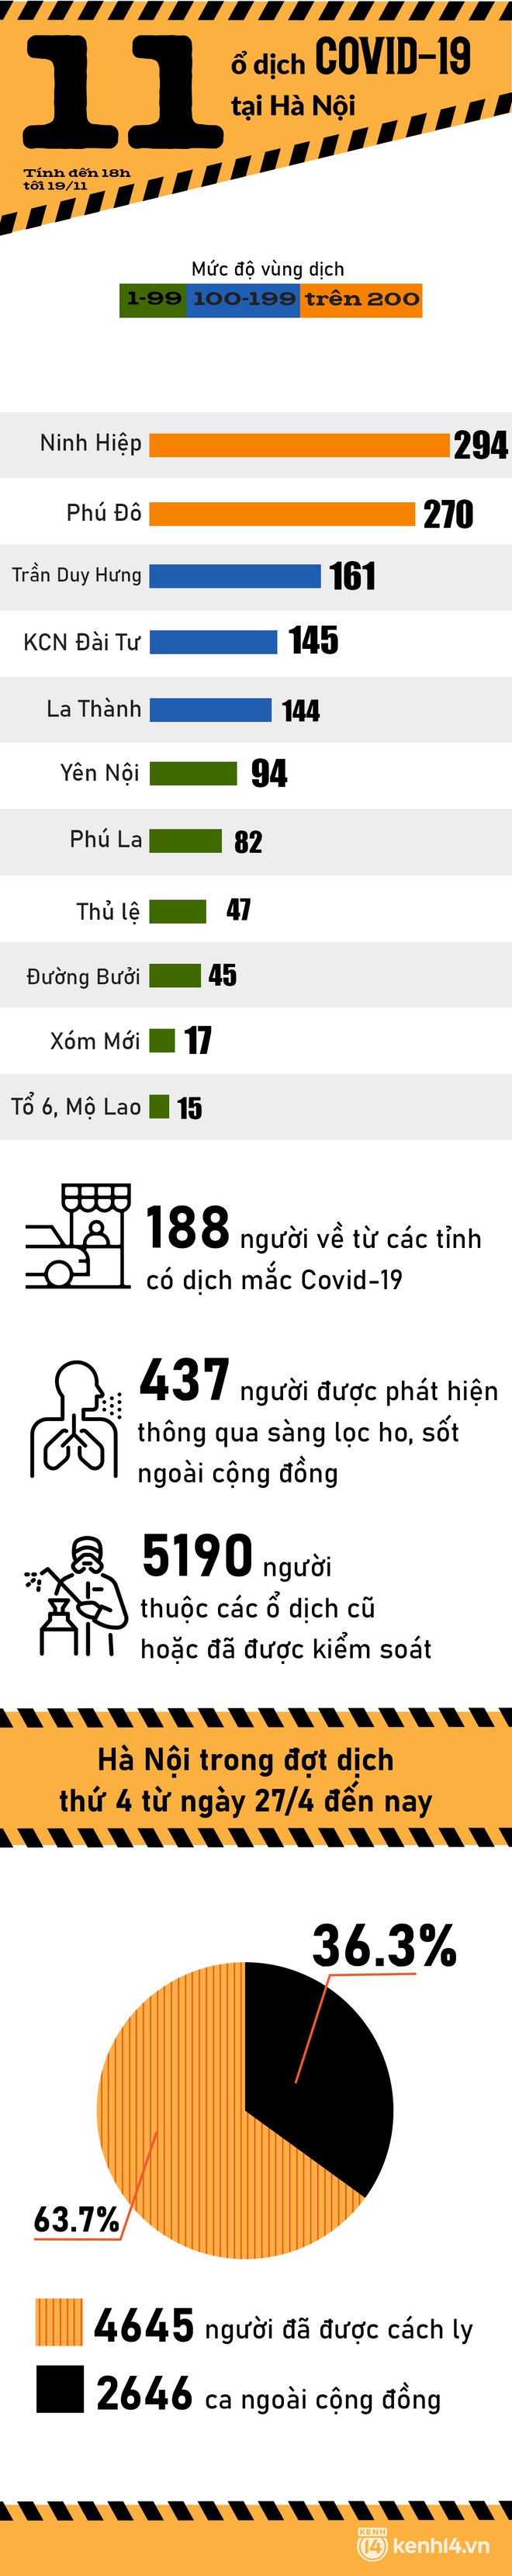 11 ổ dịch Covid-19 đang diễn tiến phức tạp tại Hà Nội, liên tiếp nhiều ngày vượt mốc 200 ca nhiễm - Ảnh 1.